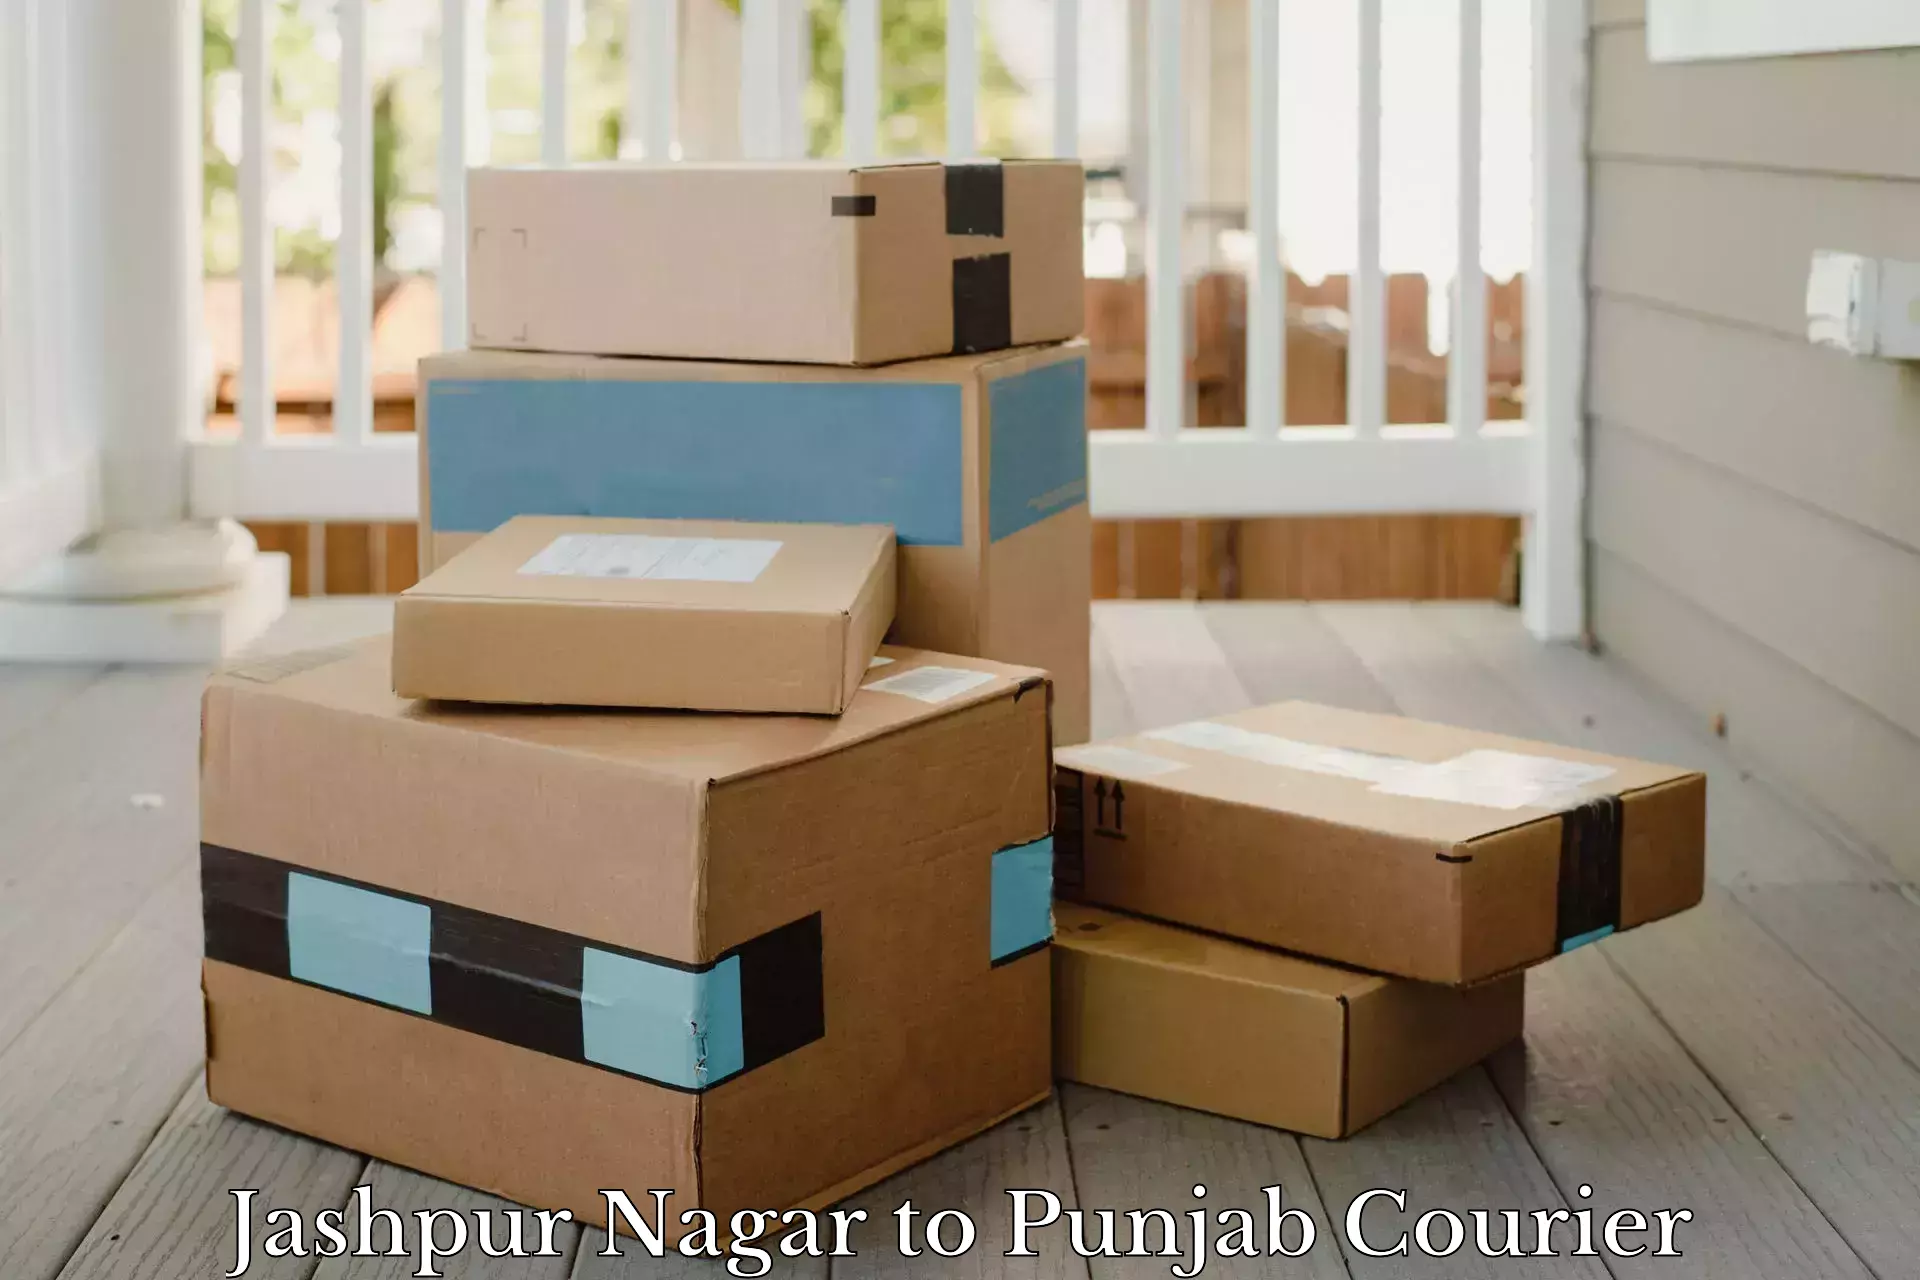 Dynamic courier services Jashpur Nagar to Punjab